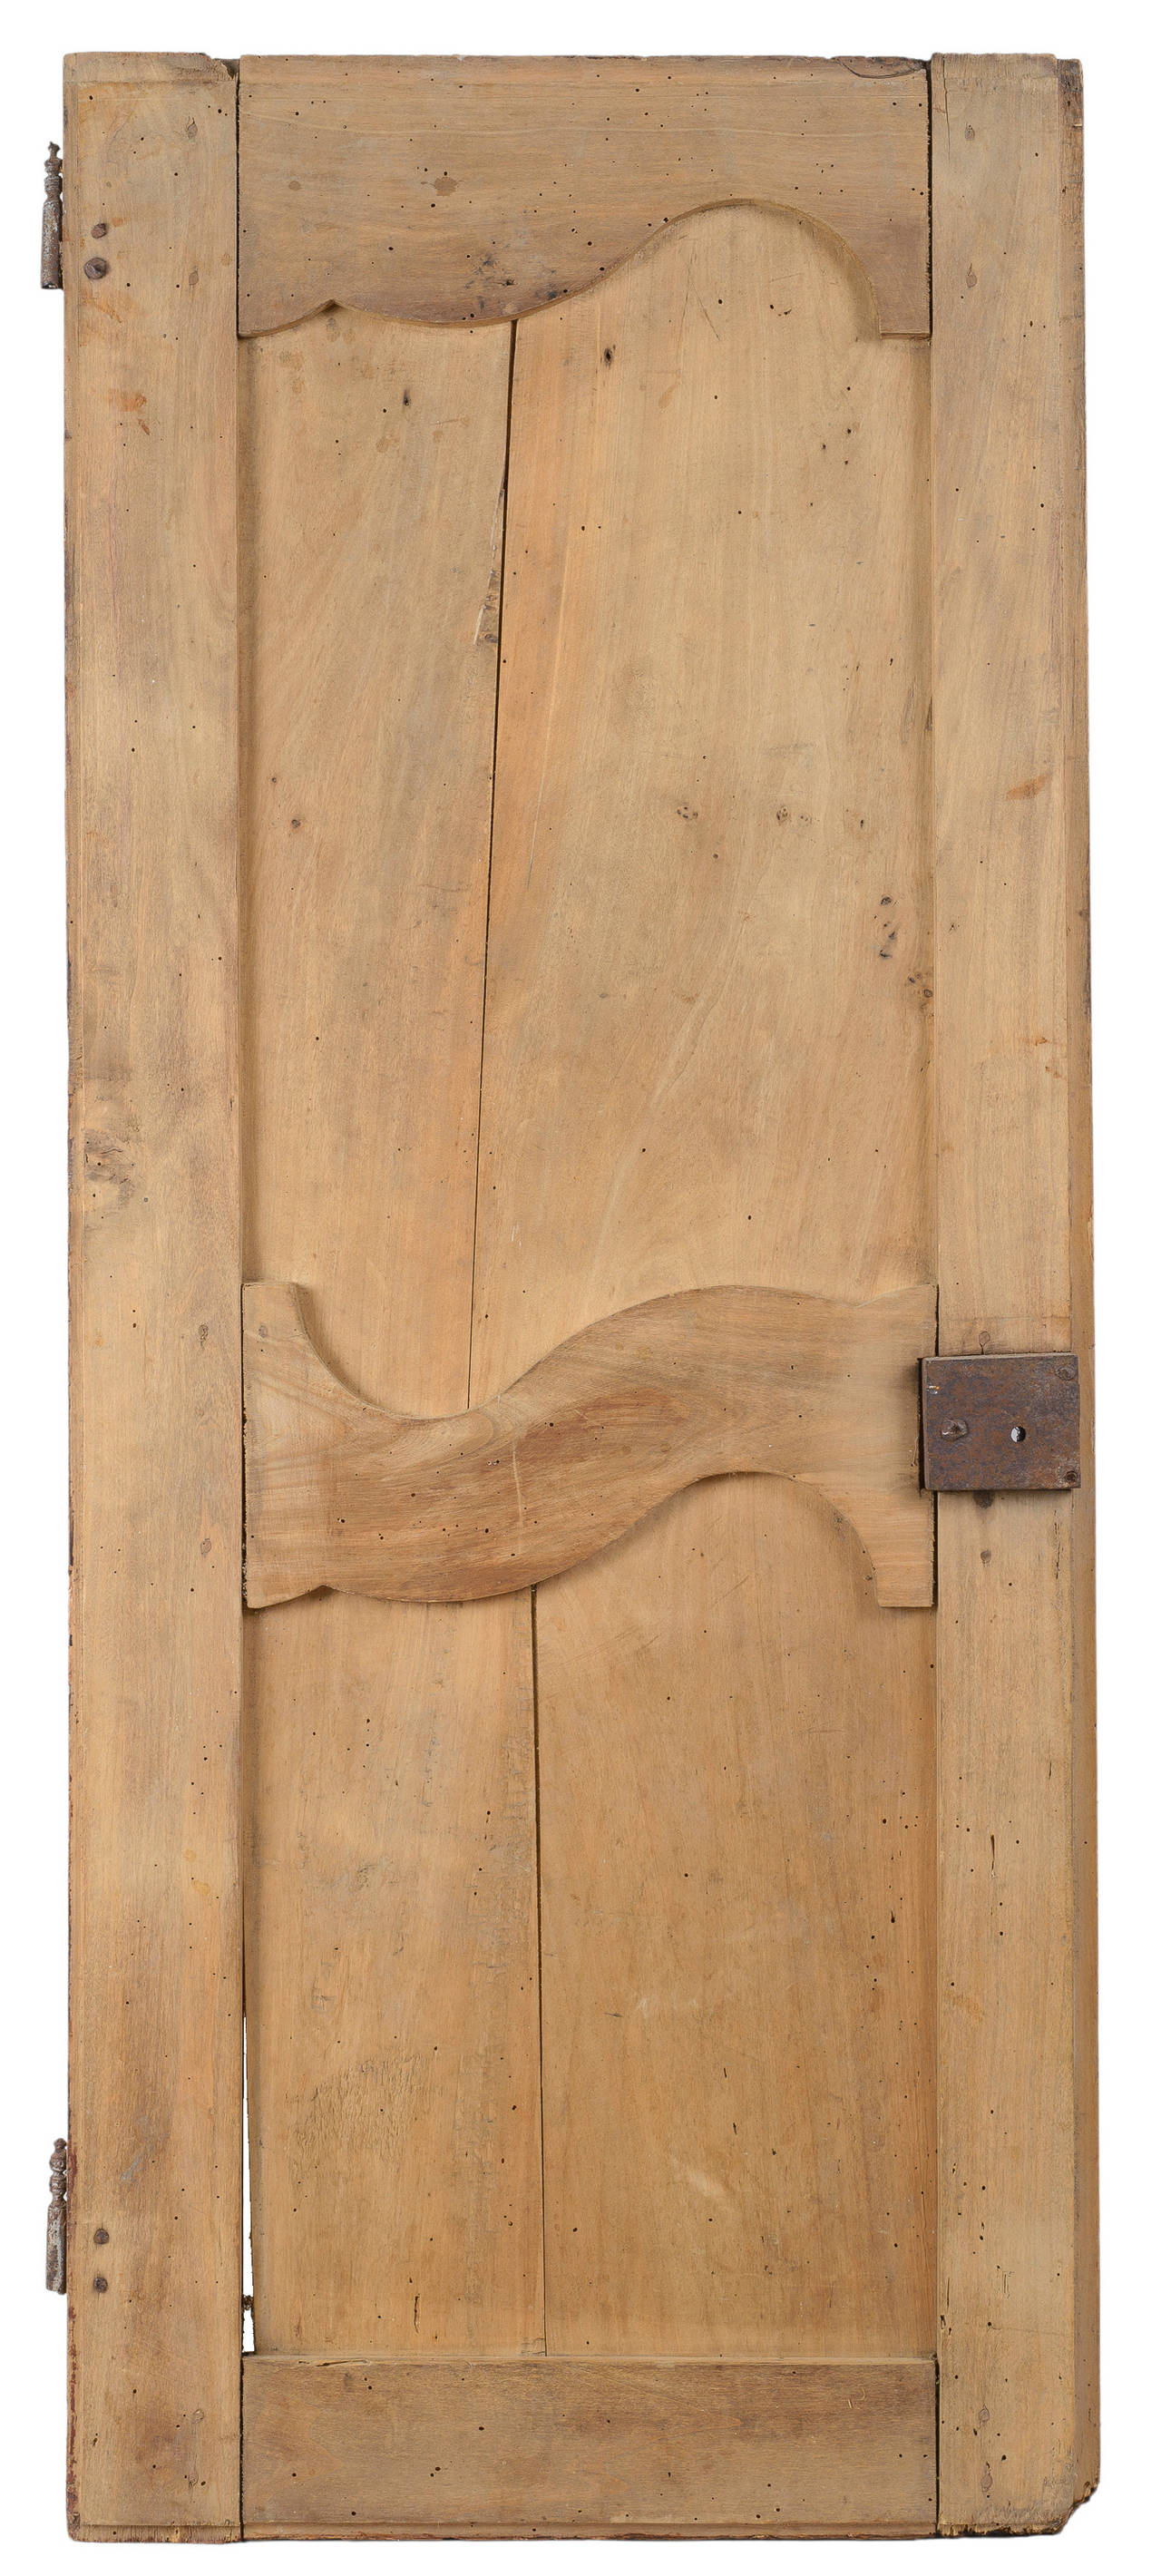 Paar Türen aus Nussbaum im Louis XV-Stil. Die asymmetrische, erhabene Platte weist auf die Übergangszeit zwischen den Möbelstilen Ludwigs XV. und XVI. hin. Die Türen sind in Zapfenbauweise ausgeführt. Die mittlere Türstütze, wie auf dem Foto der